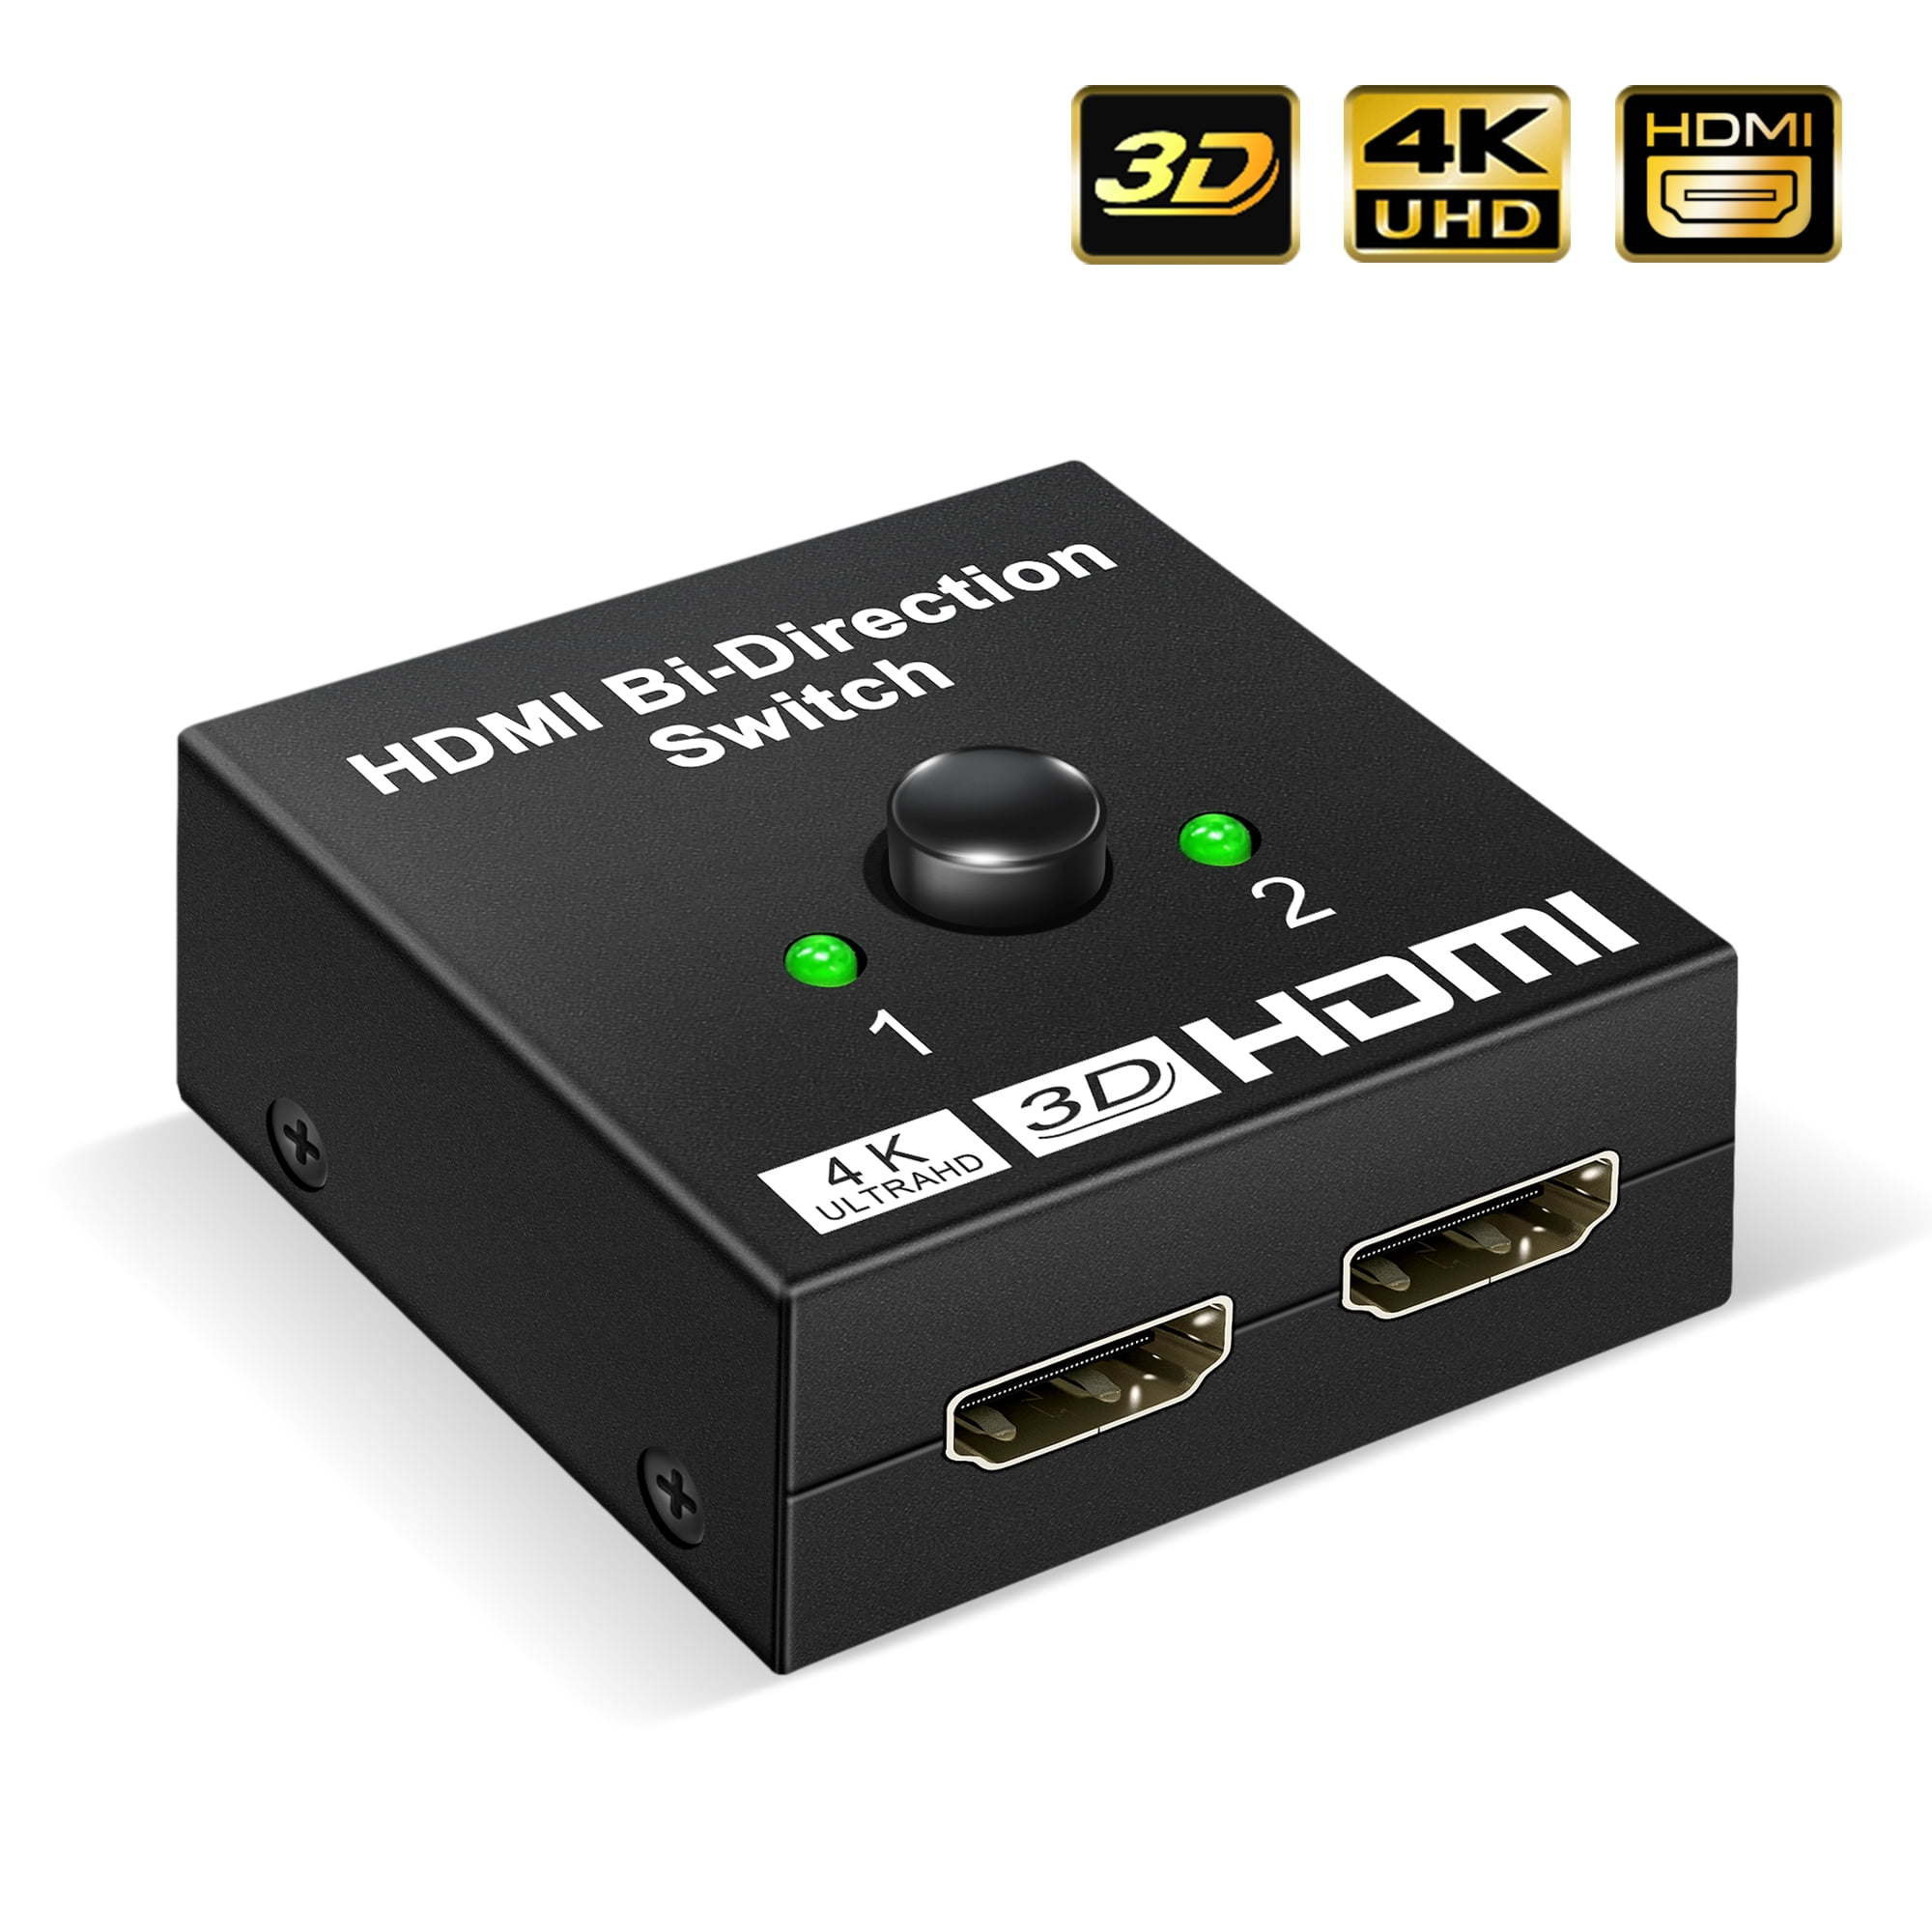 udvande Grundlæggende teori Ordliste 4K HDMI Splitter for Dual Monitors Extend, HDMI Switch Bi-Directional  Splitter1 in 2 out - Walmart.com